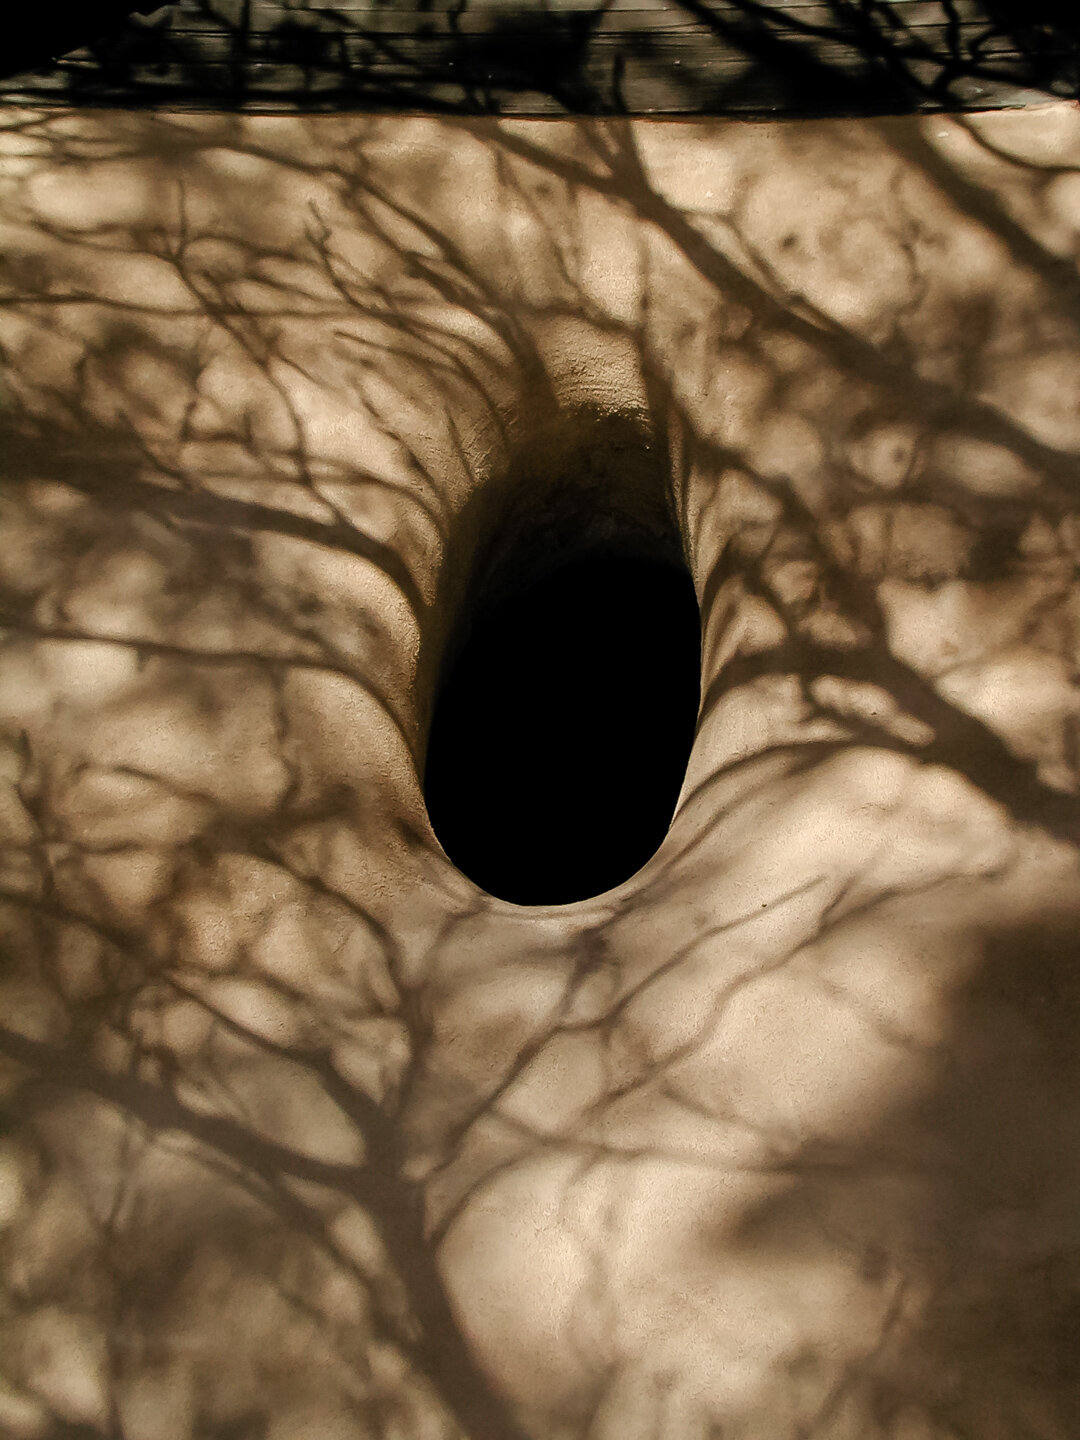 Hole, New Mexico 2000